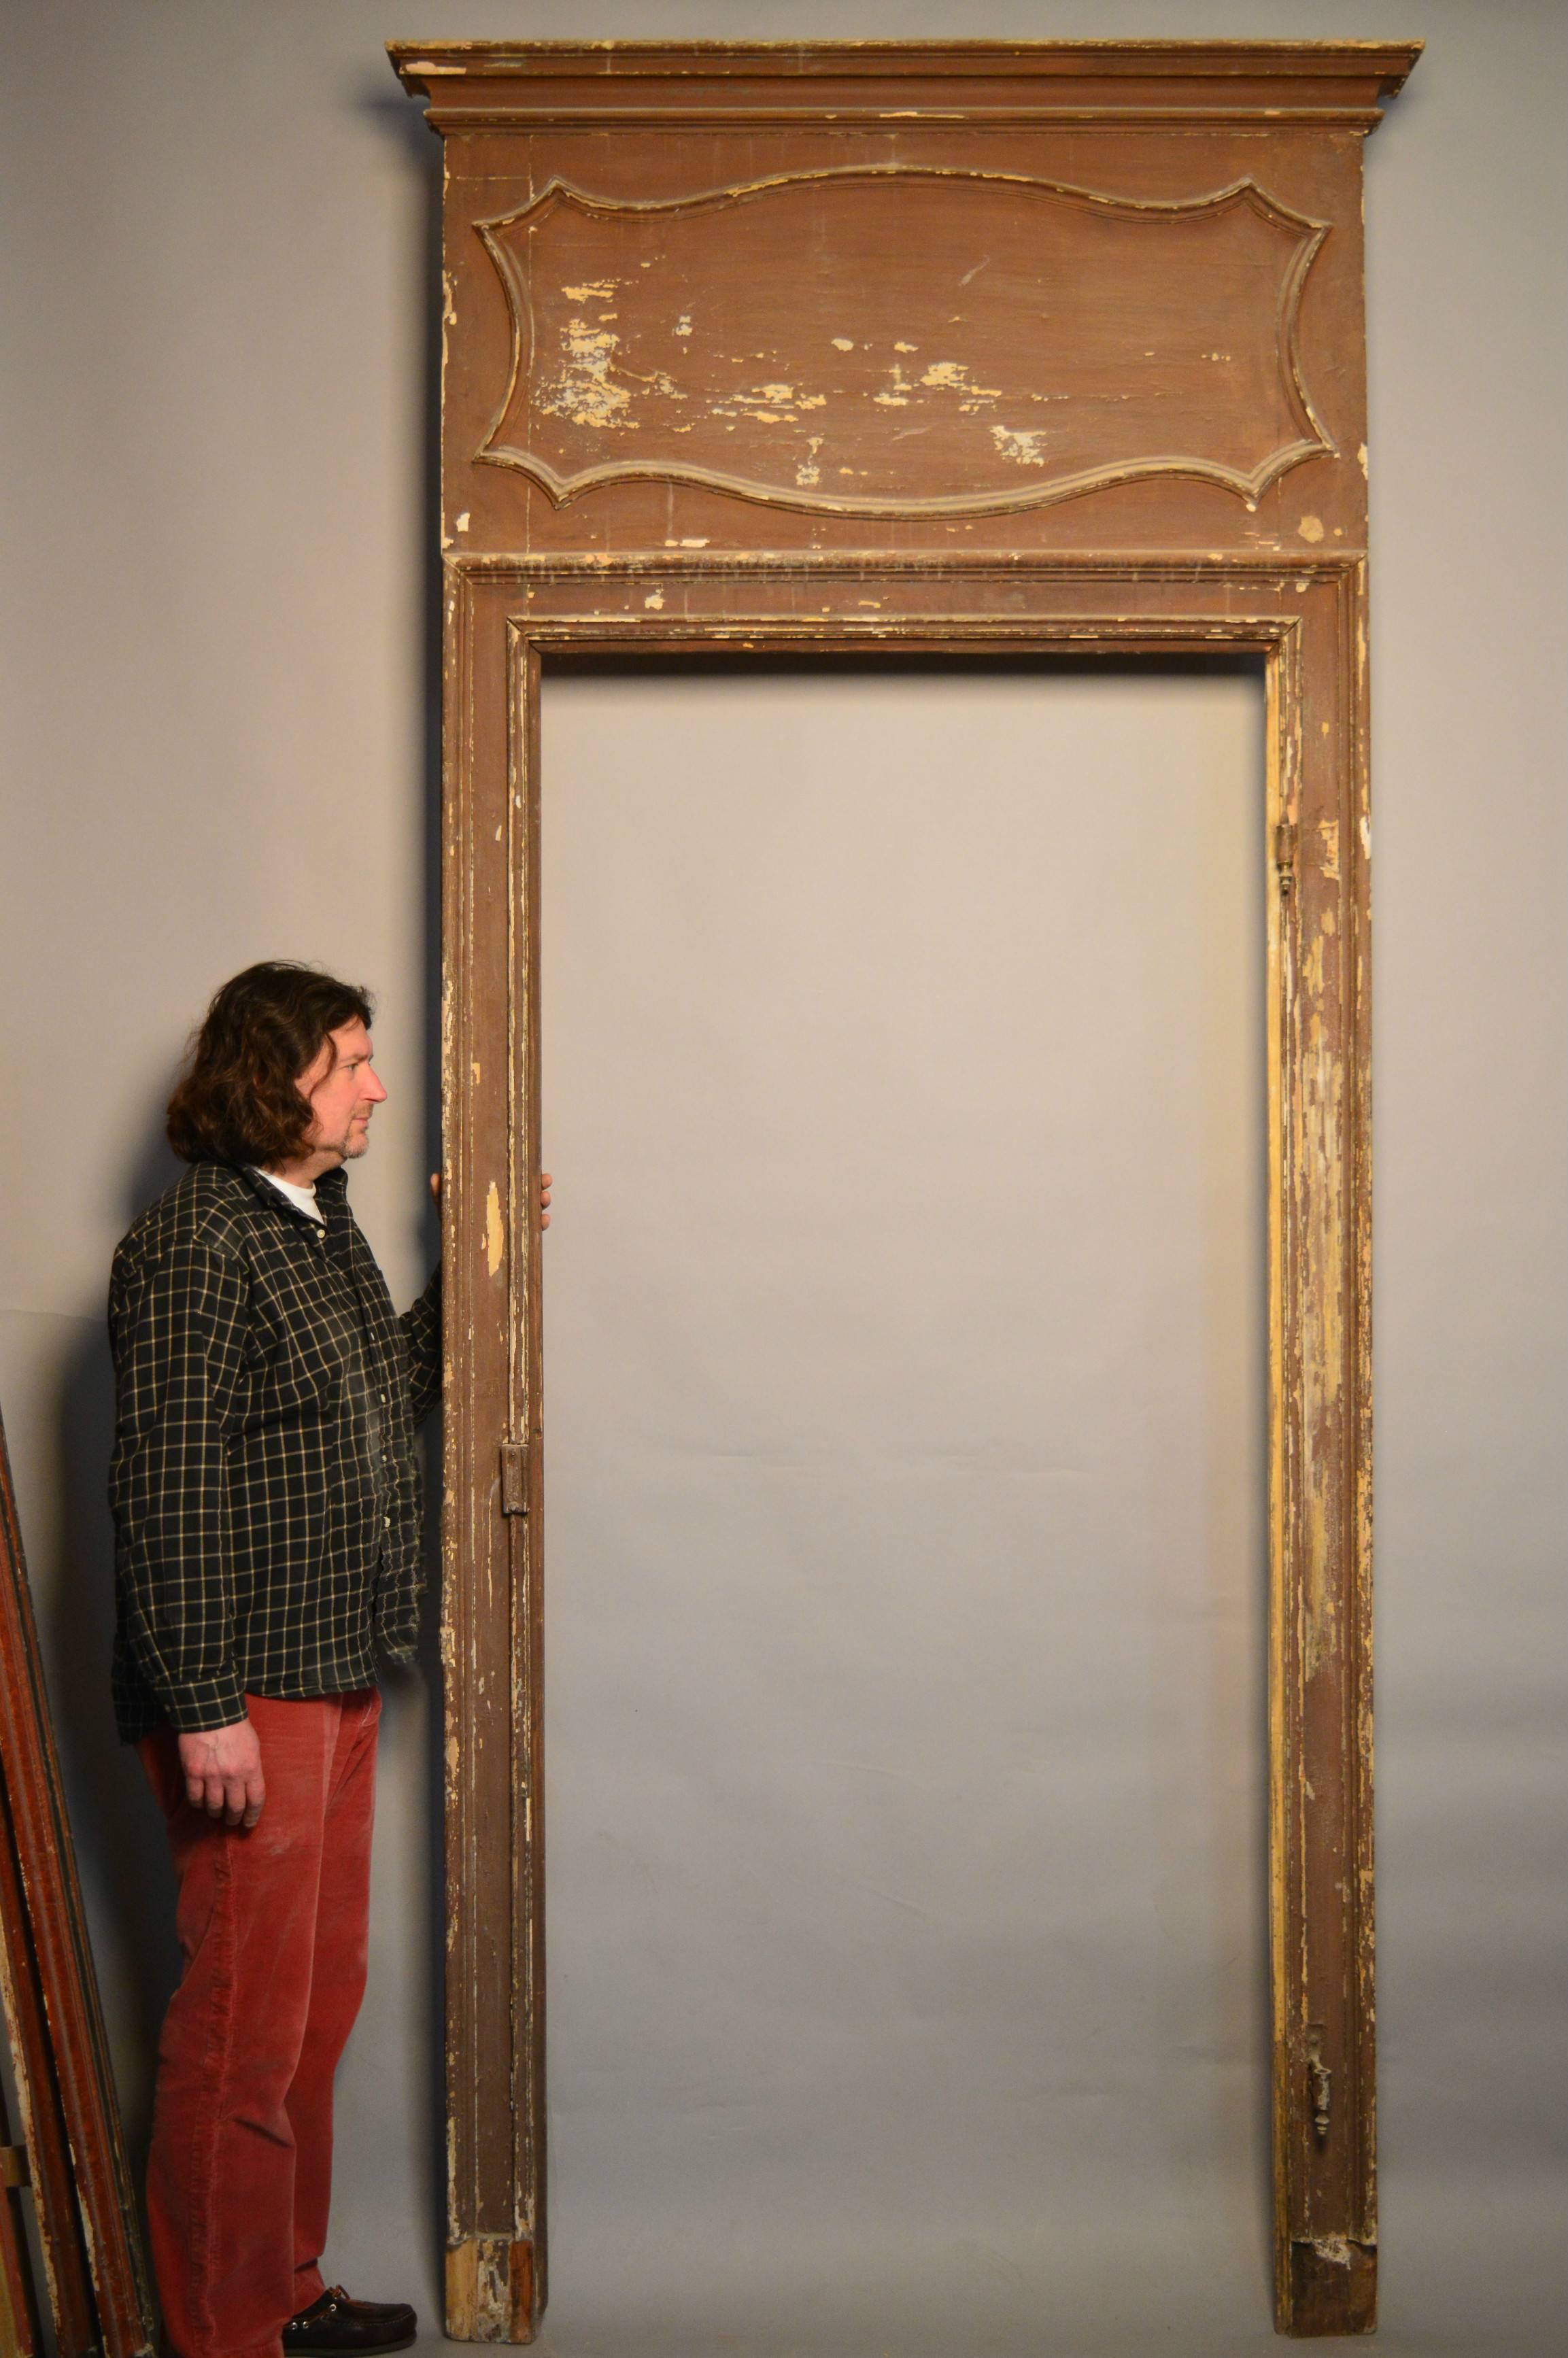 Italian (Tuscan) door surround of grand proportions, circa 1820.

Interior of door frame measures 237 H x 104 W cm.